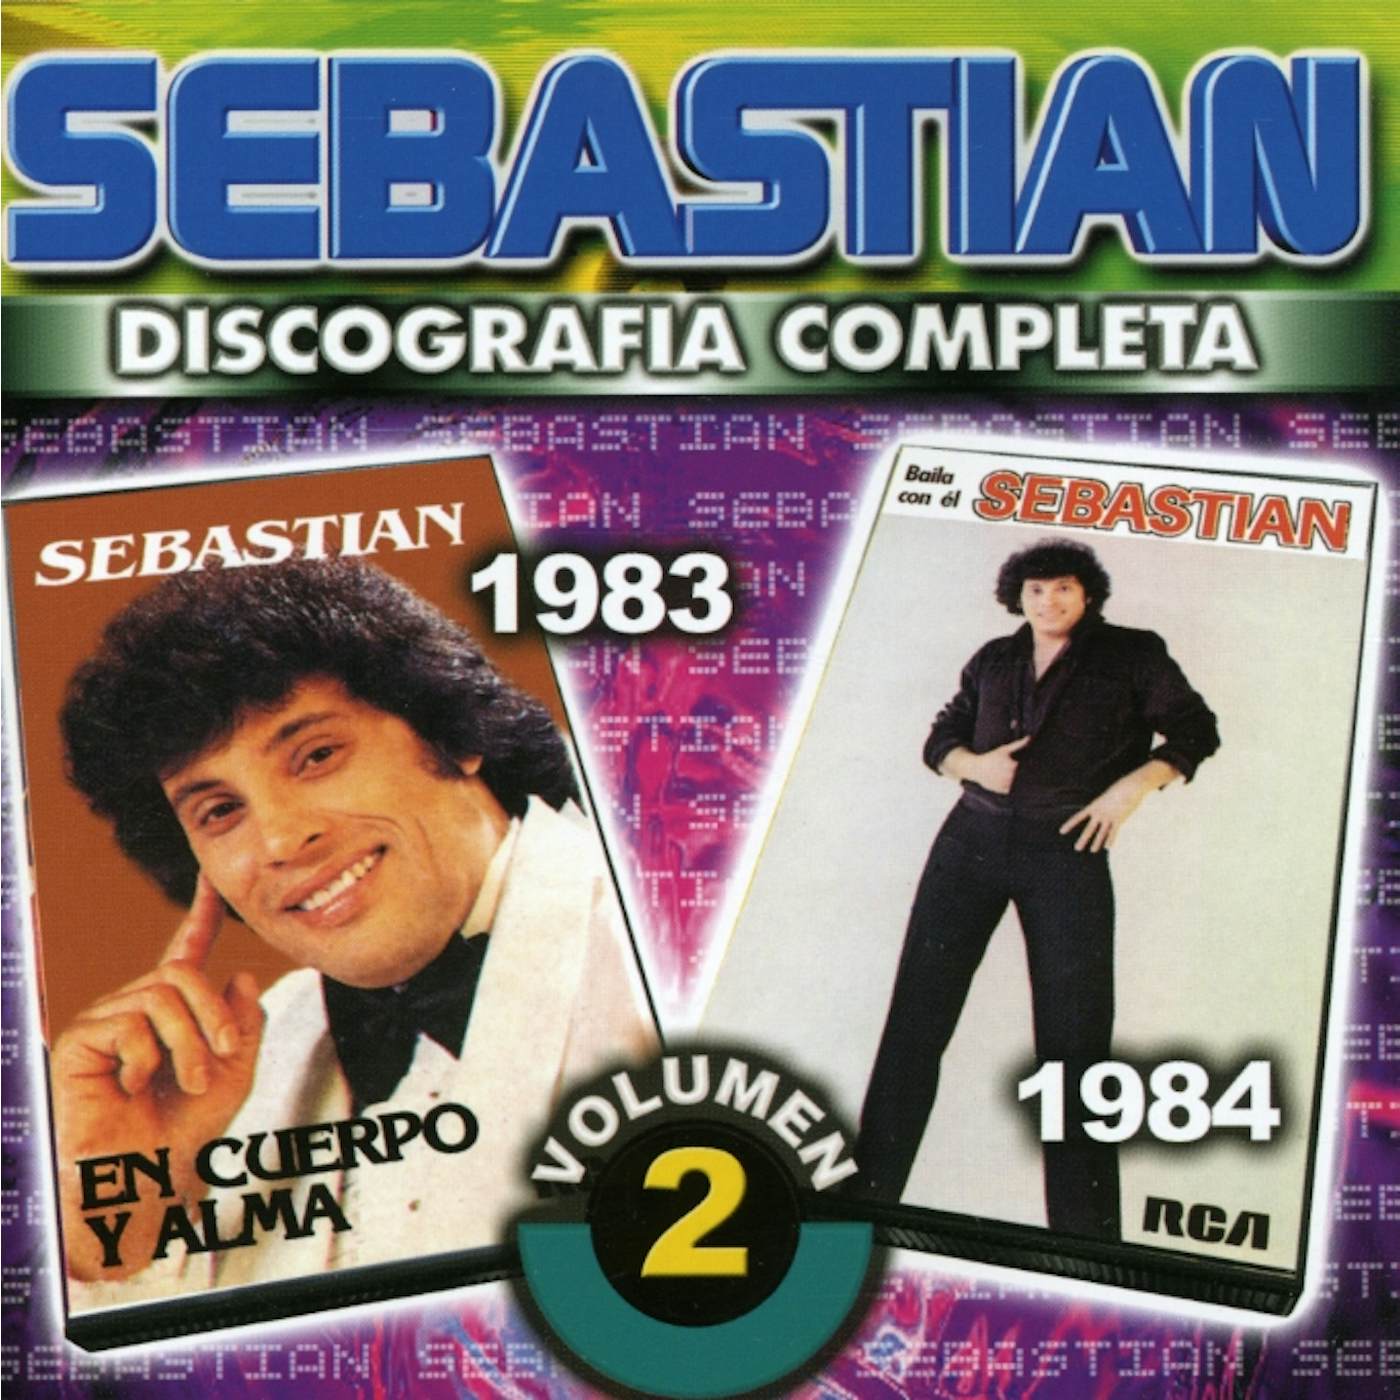 SebastiAn DISCOGRAFIA COMPLETA 2 CD